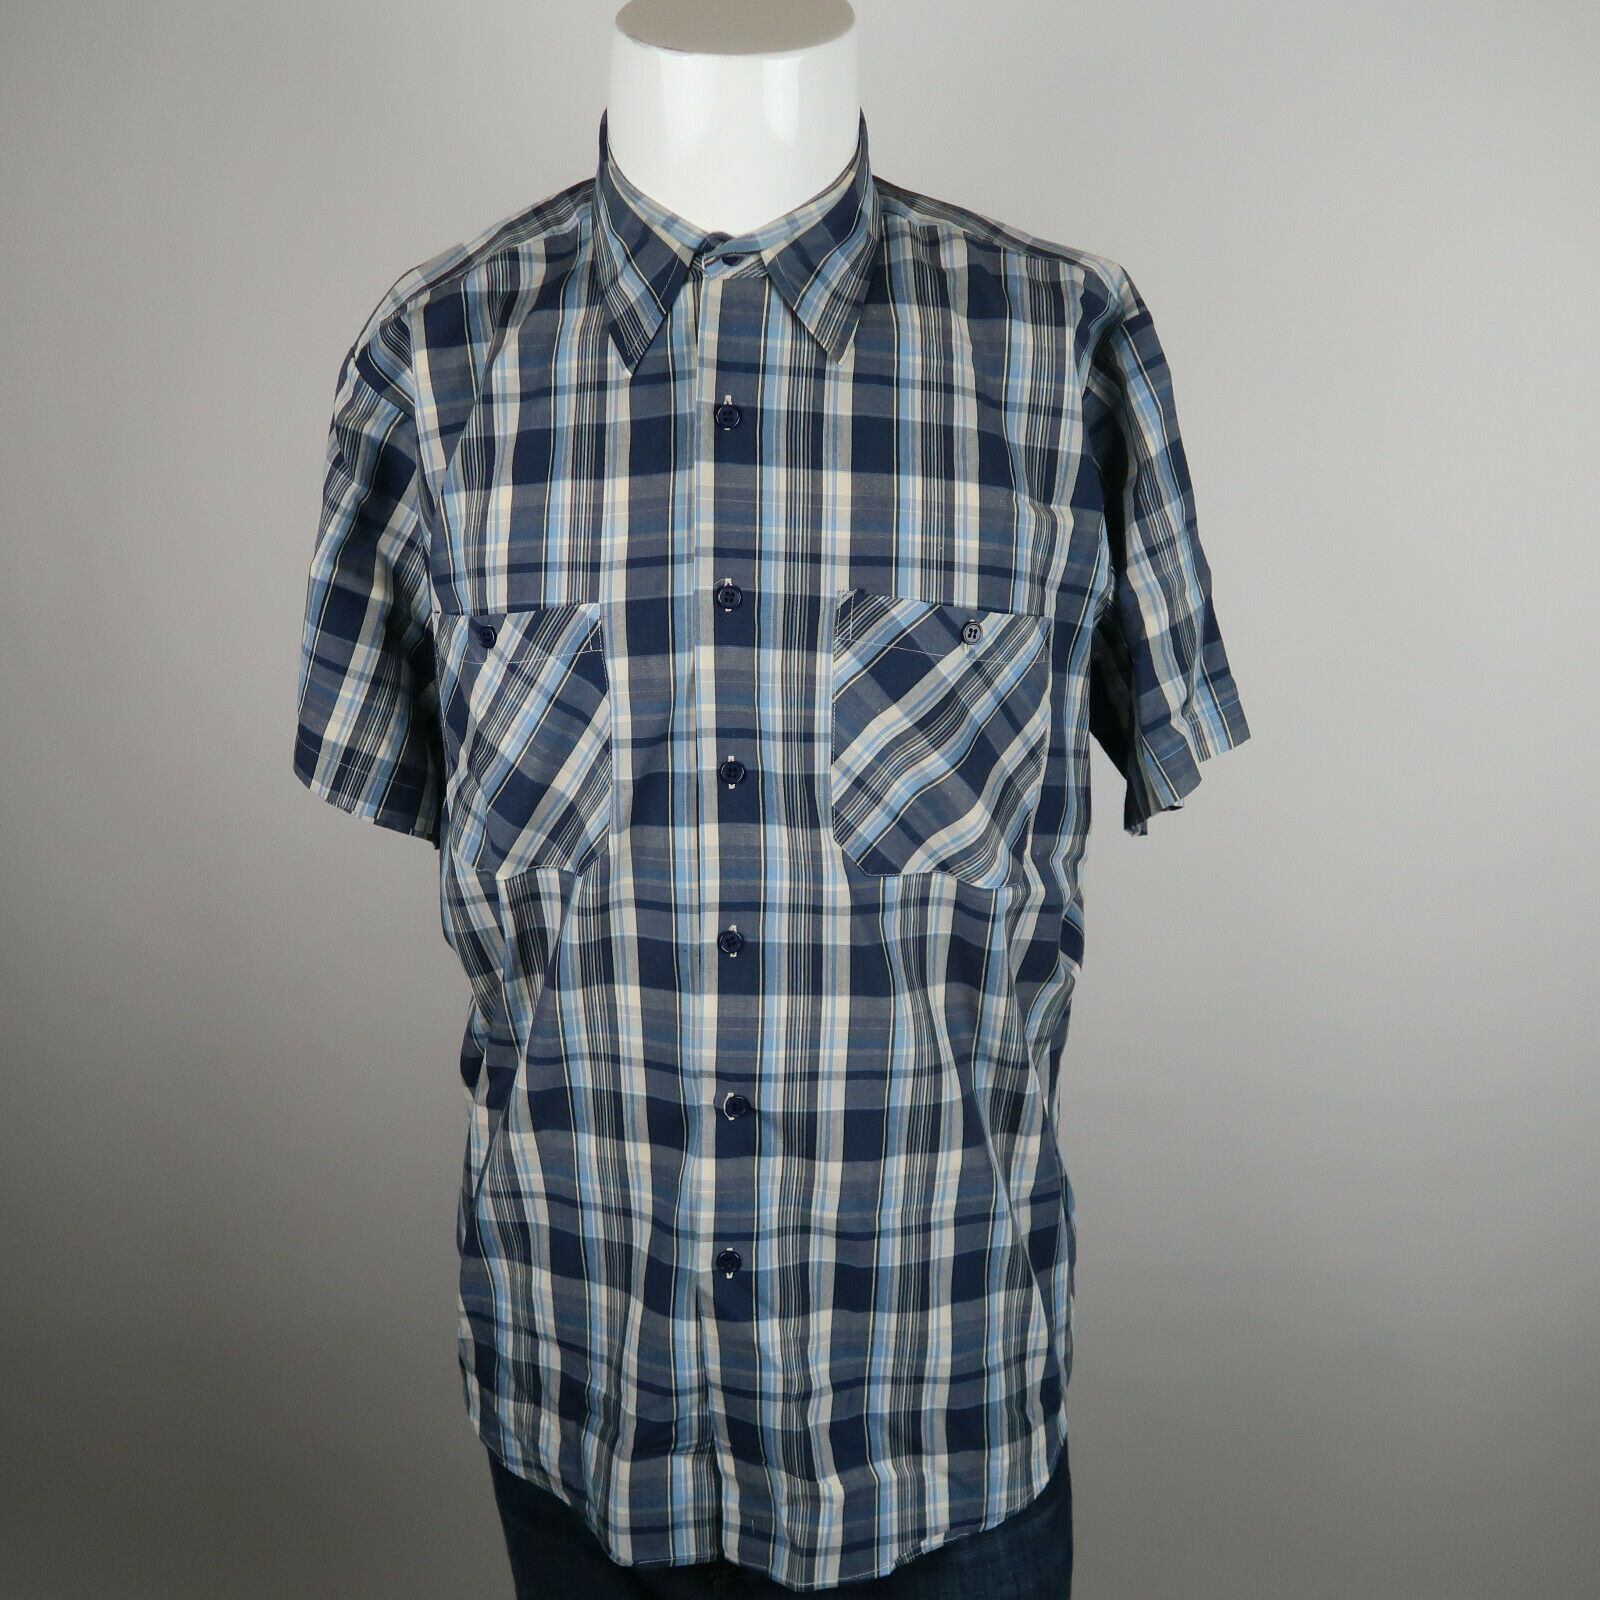 VINTAGE Fieldmaster Button Up Shirt Mens Size Large Blue Plaid Short ...